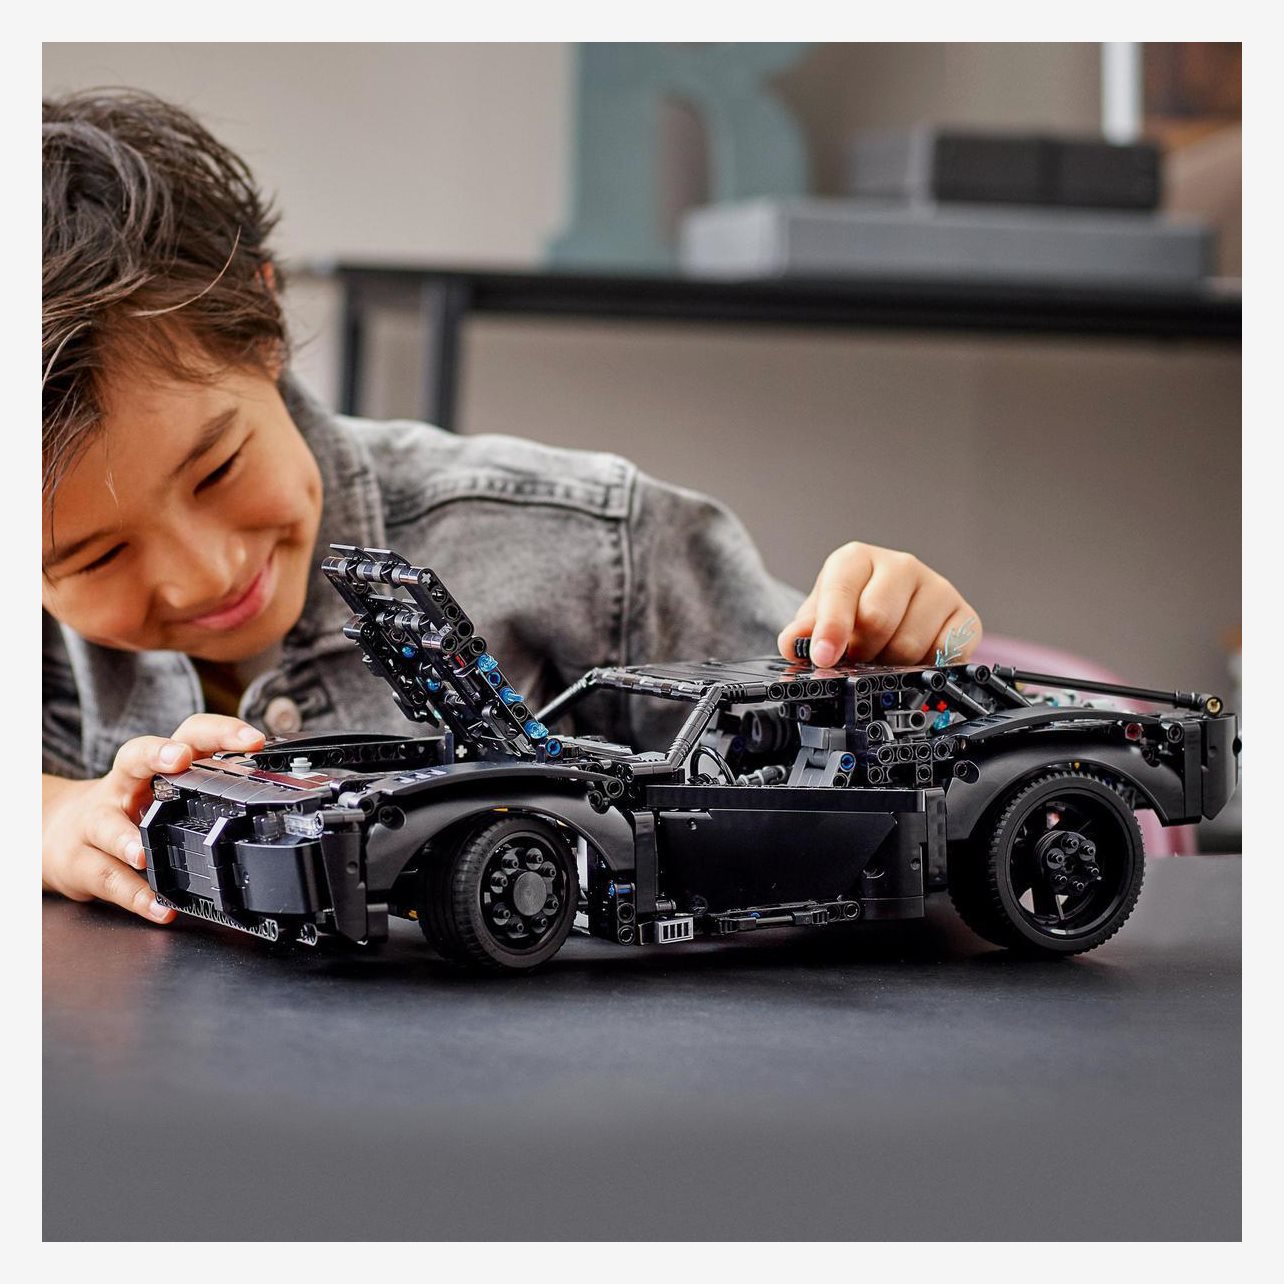 LEGO 42127 Technic BATMAN – BATMOBILEN, Byggsats för Barn och Tonåringar,  Leksaksfordon, Superhjältar : : Leksaker